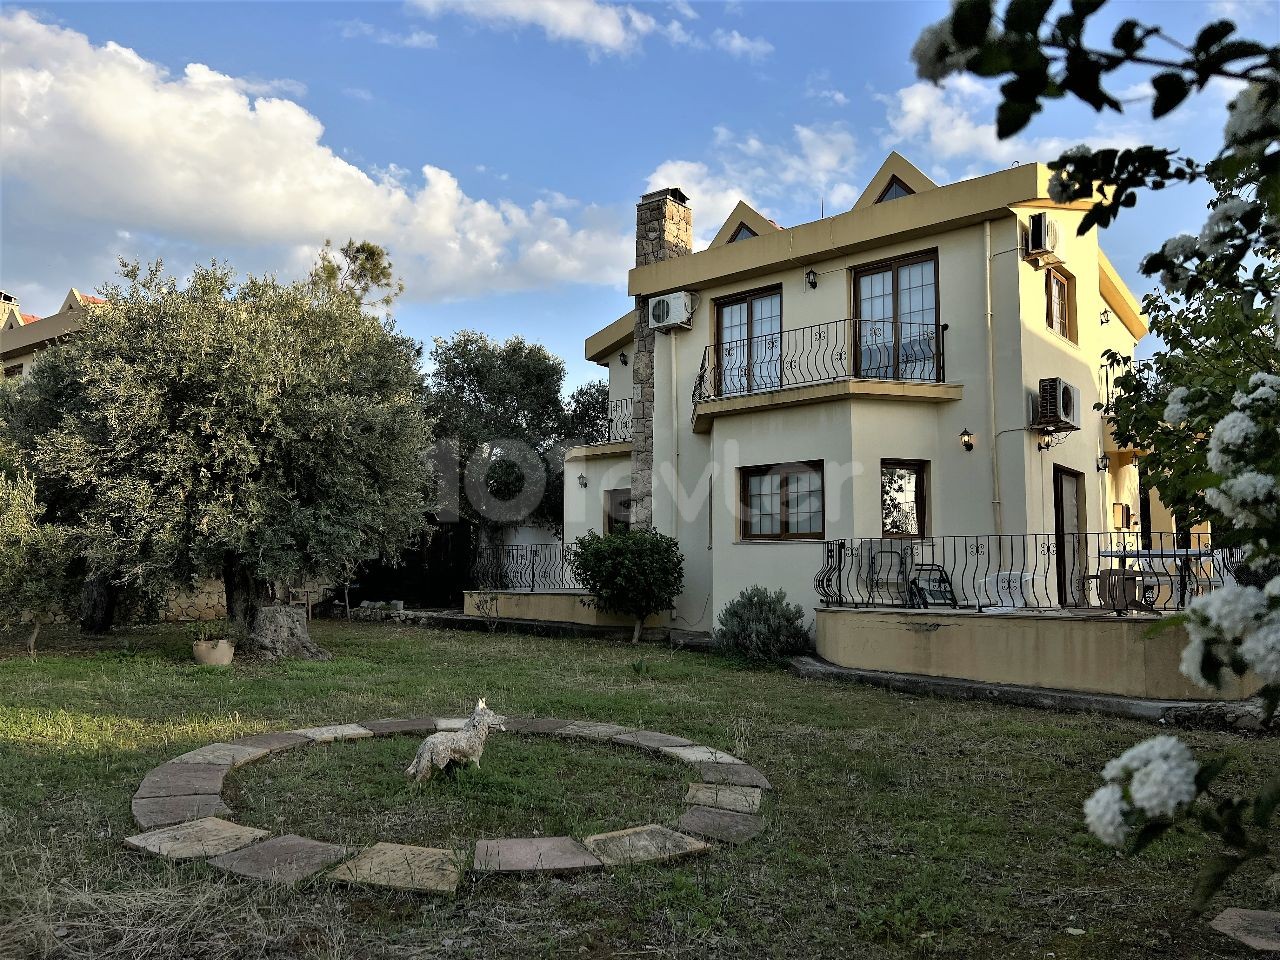 Вилла с 3 спальнями и садом в идеальном месте в Эсентепе, Кирения. 05338403555 /05488403555